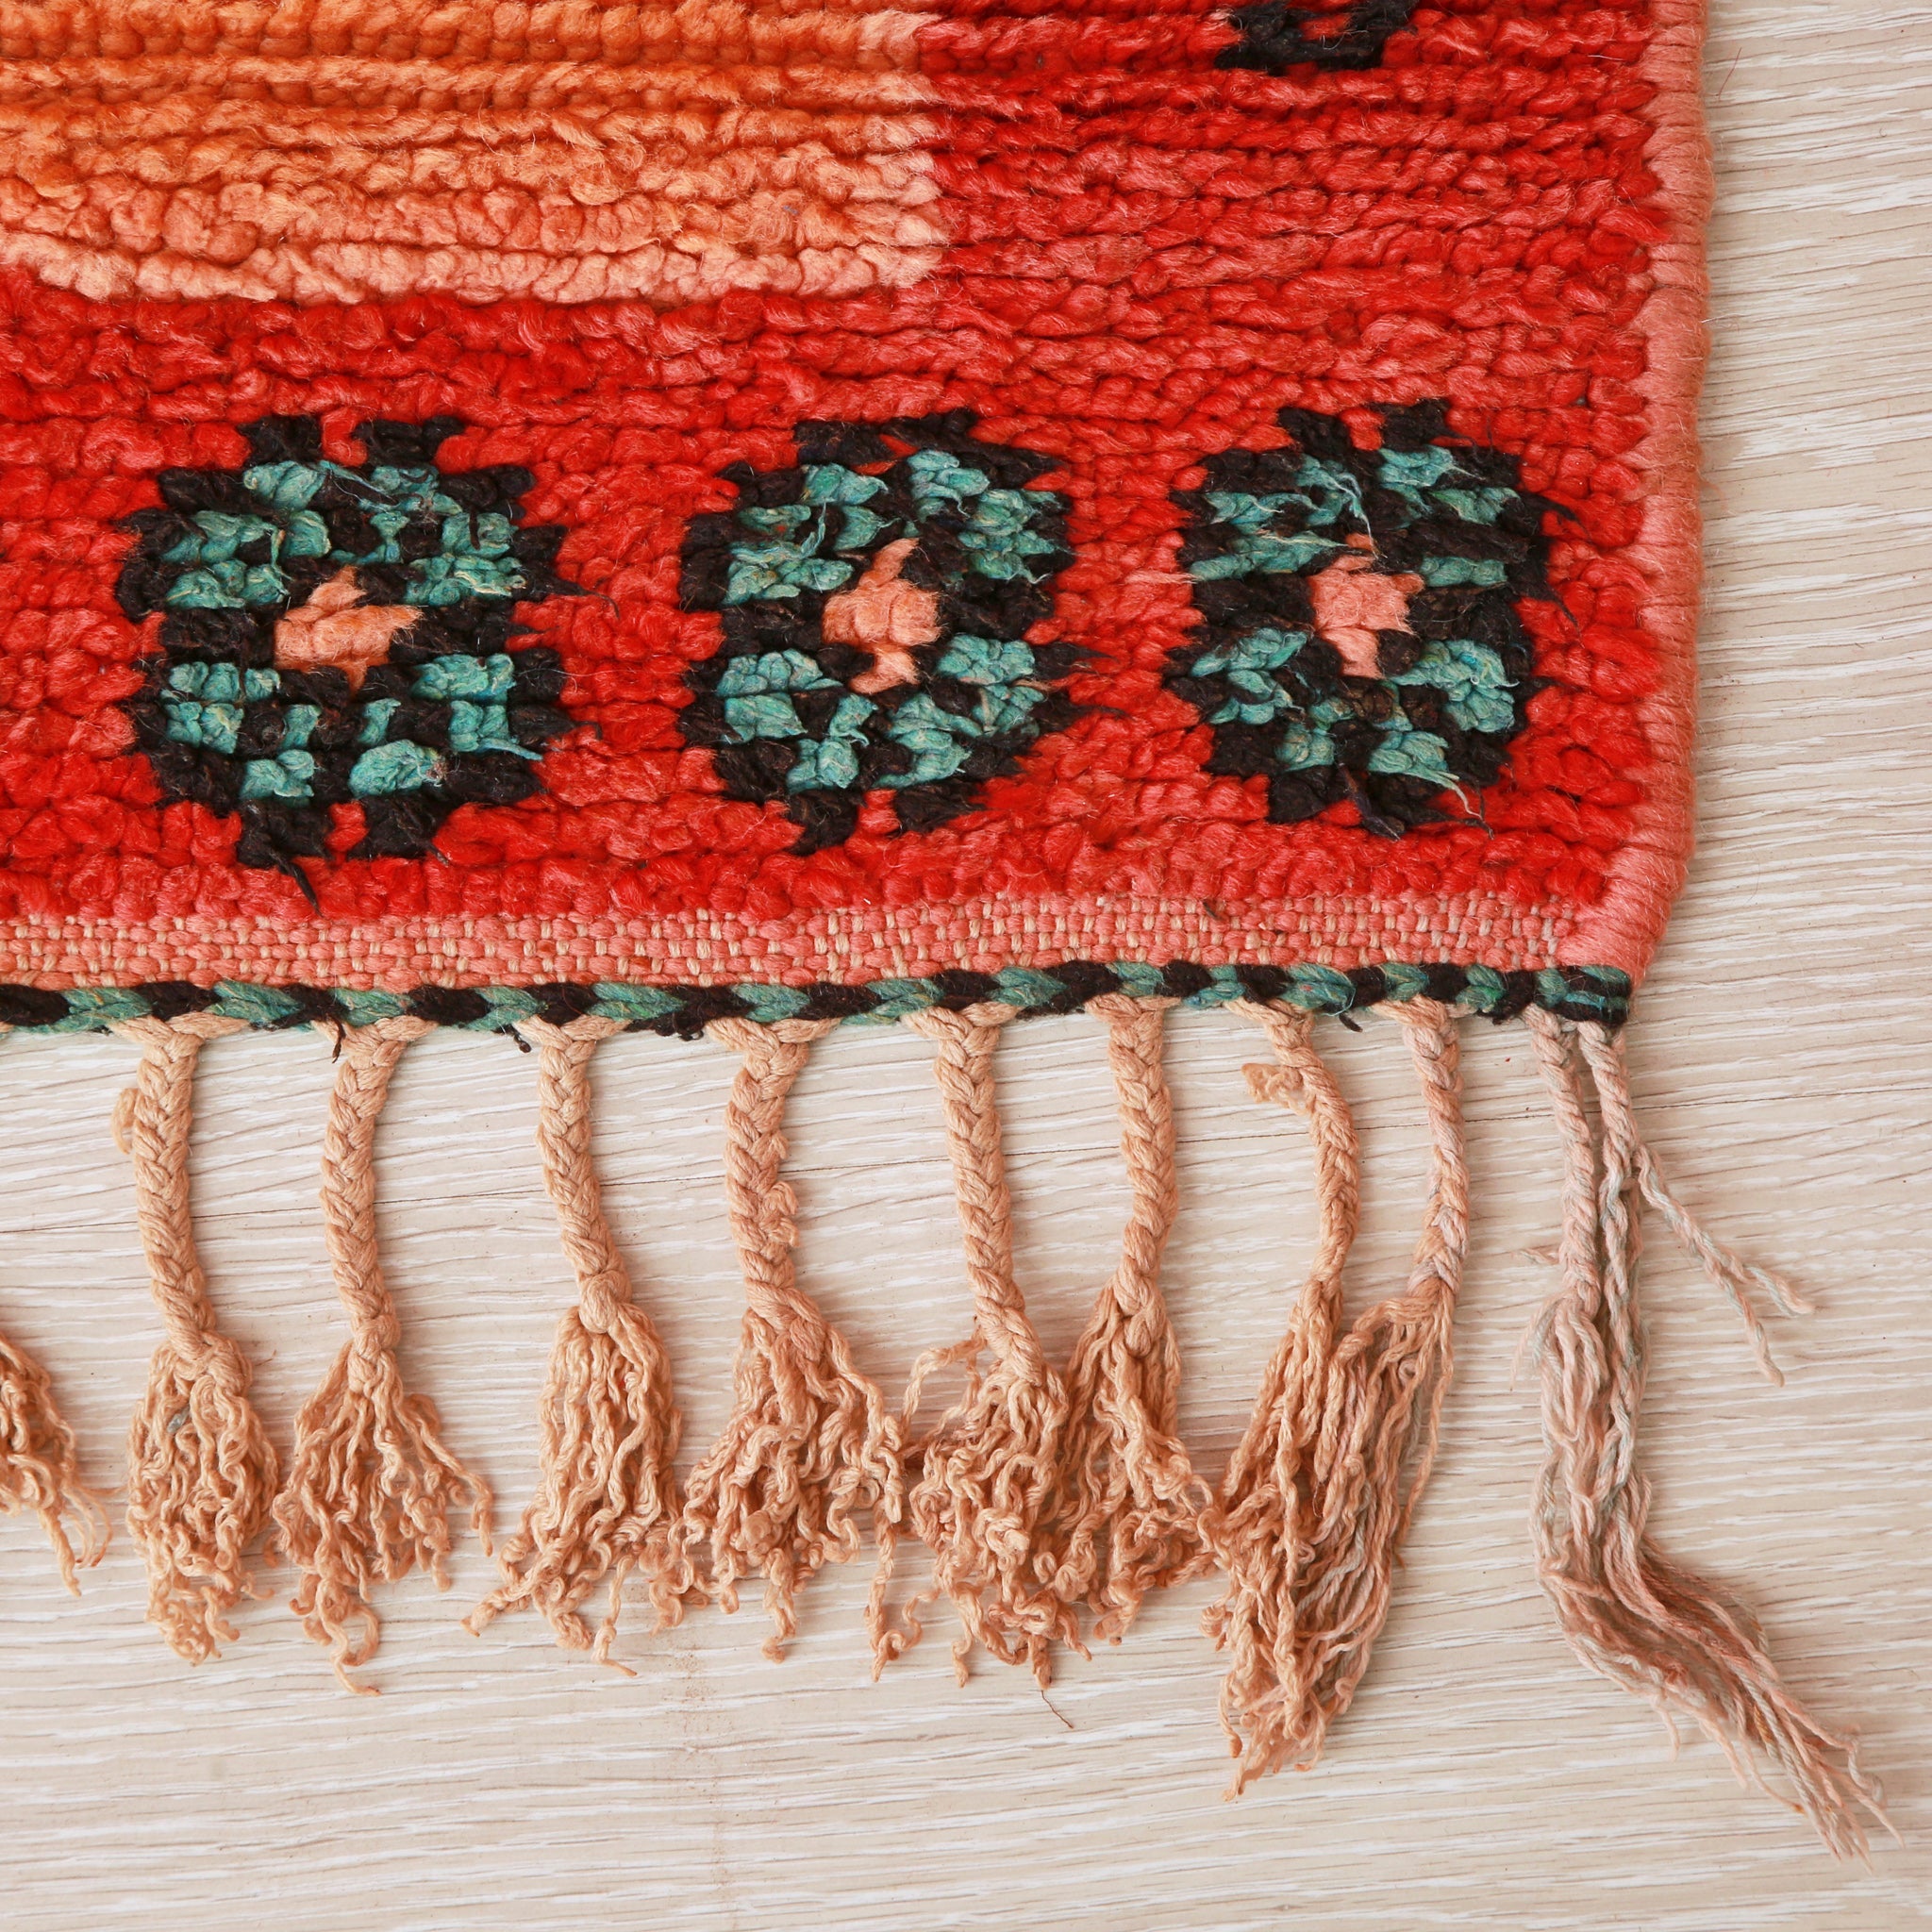 angolo di un tappeto azilal con fiori verdi su base rossa